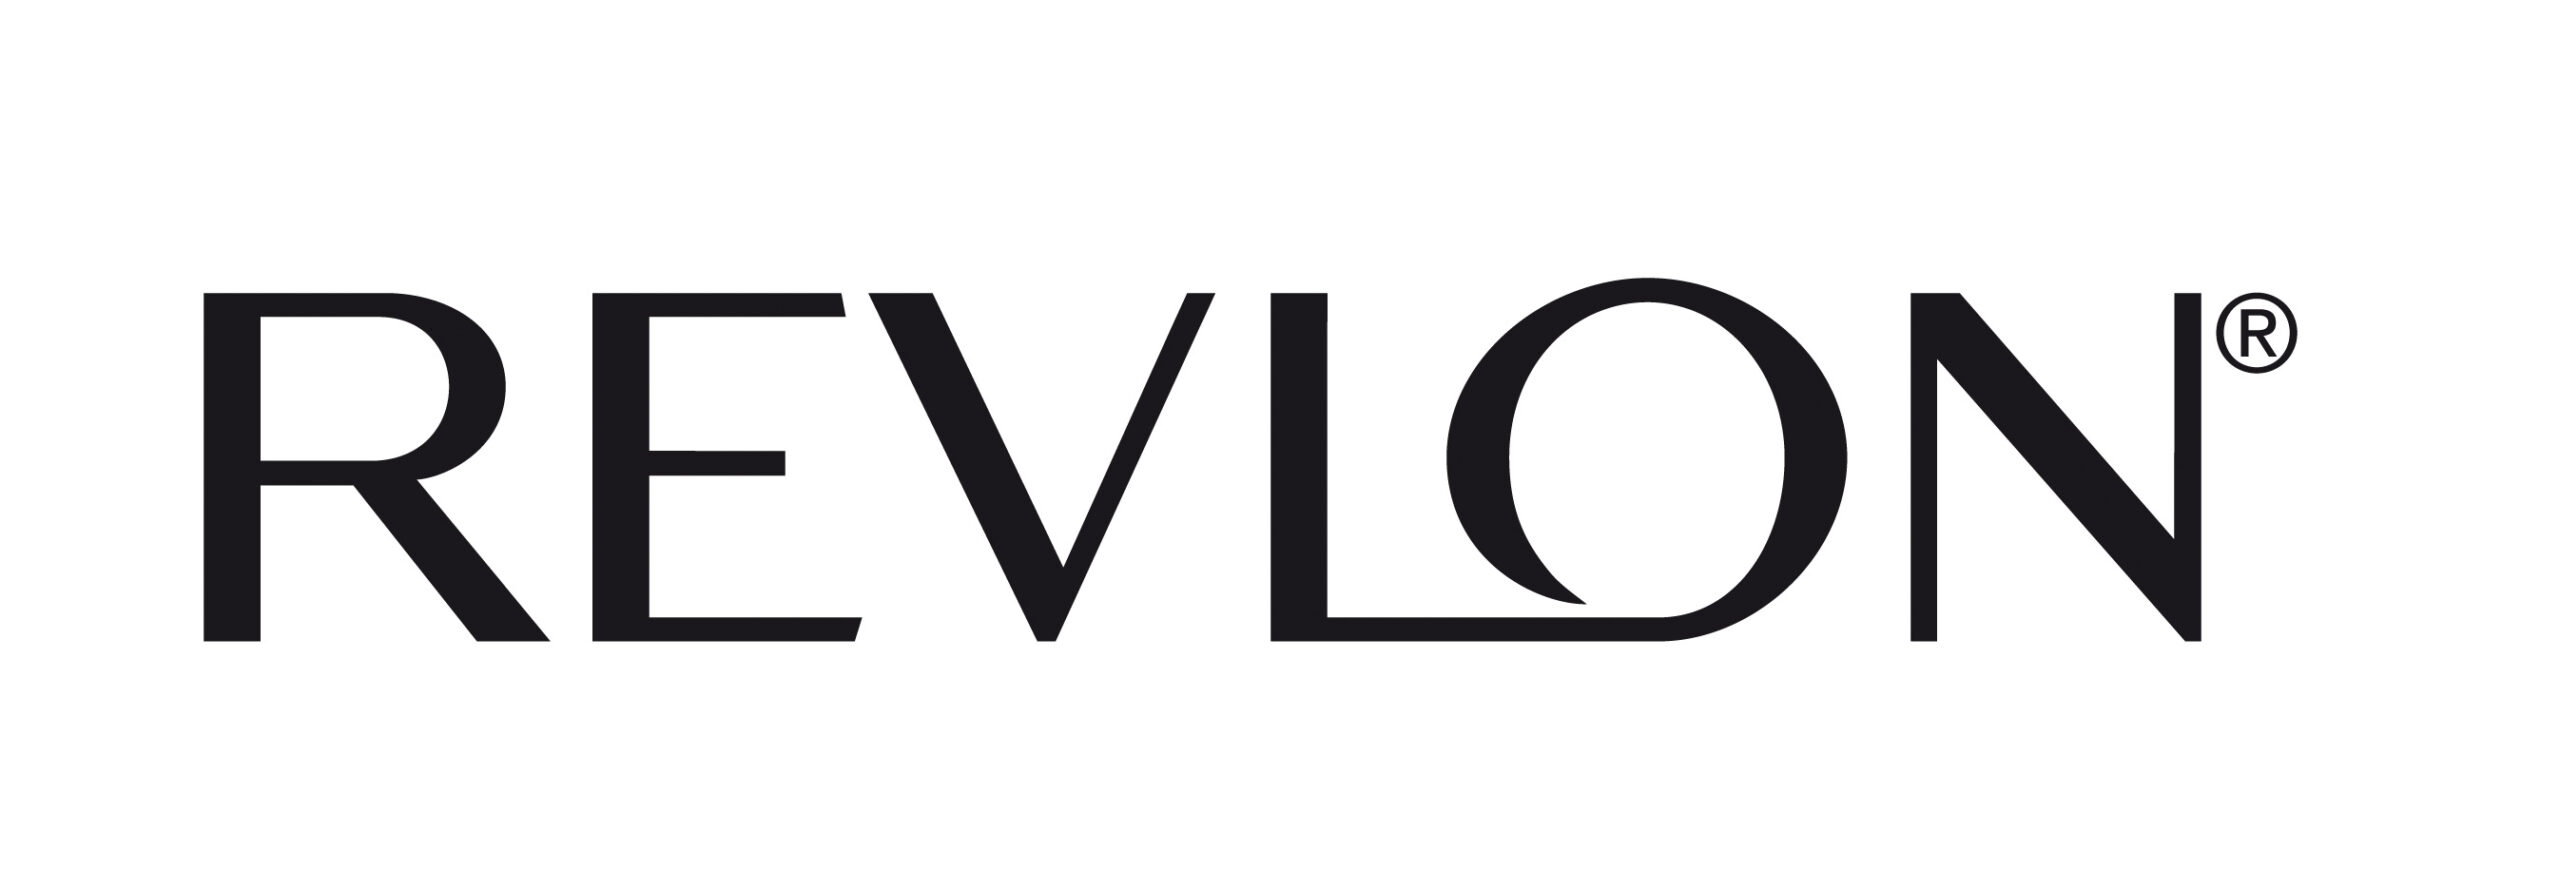 revlon-logo-wallpaper